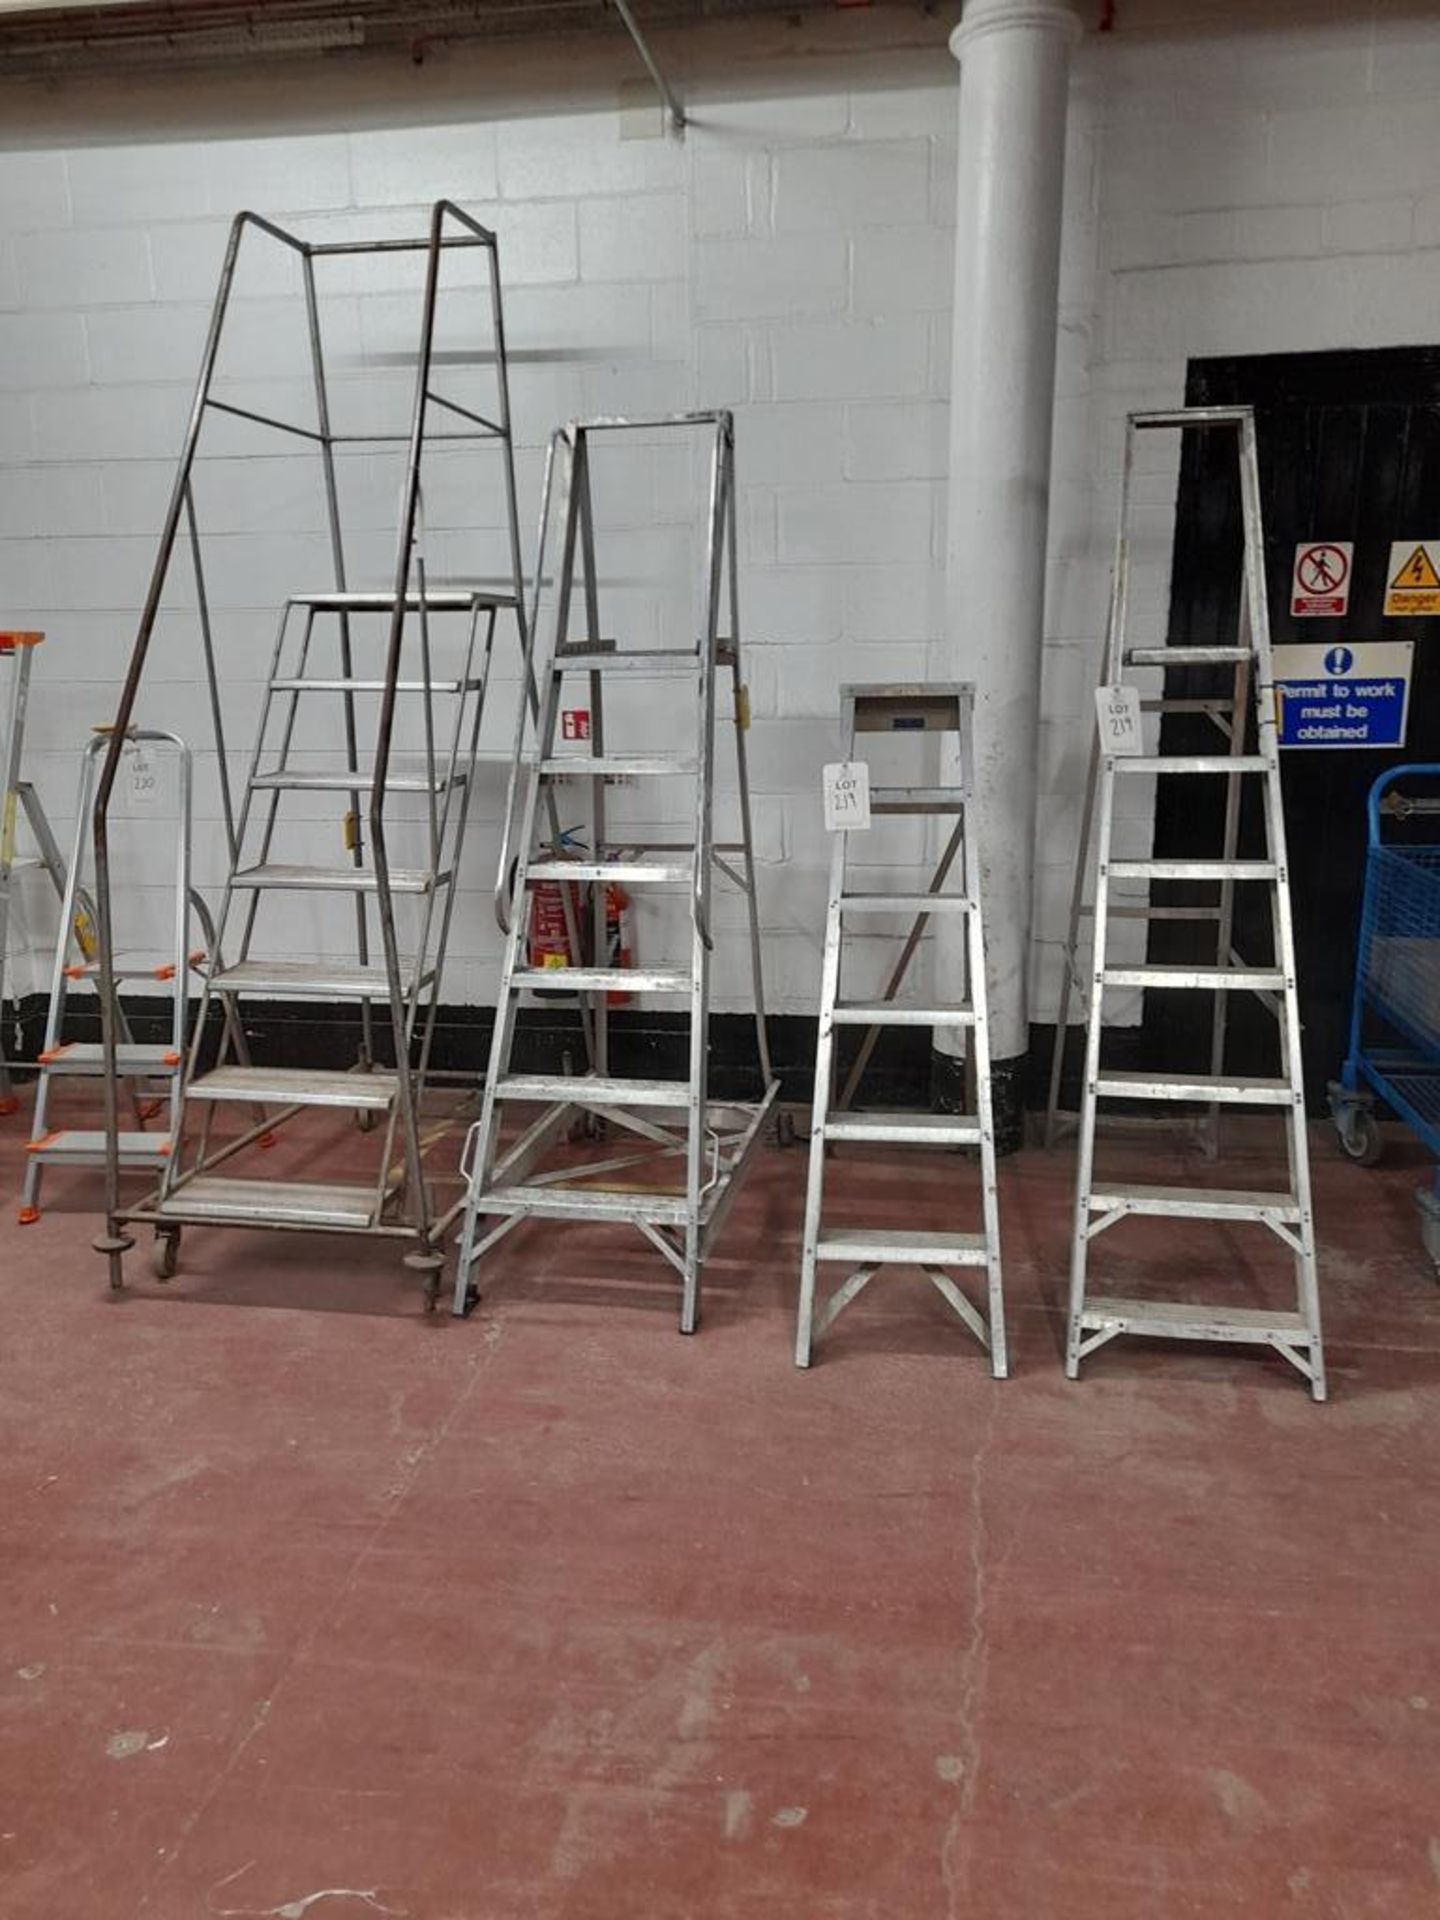 1 - 7-tread warehouse steps, 1 - 6-tread warehouse steps, 1 - 7-tread step ladder an 1 - 6 tread